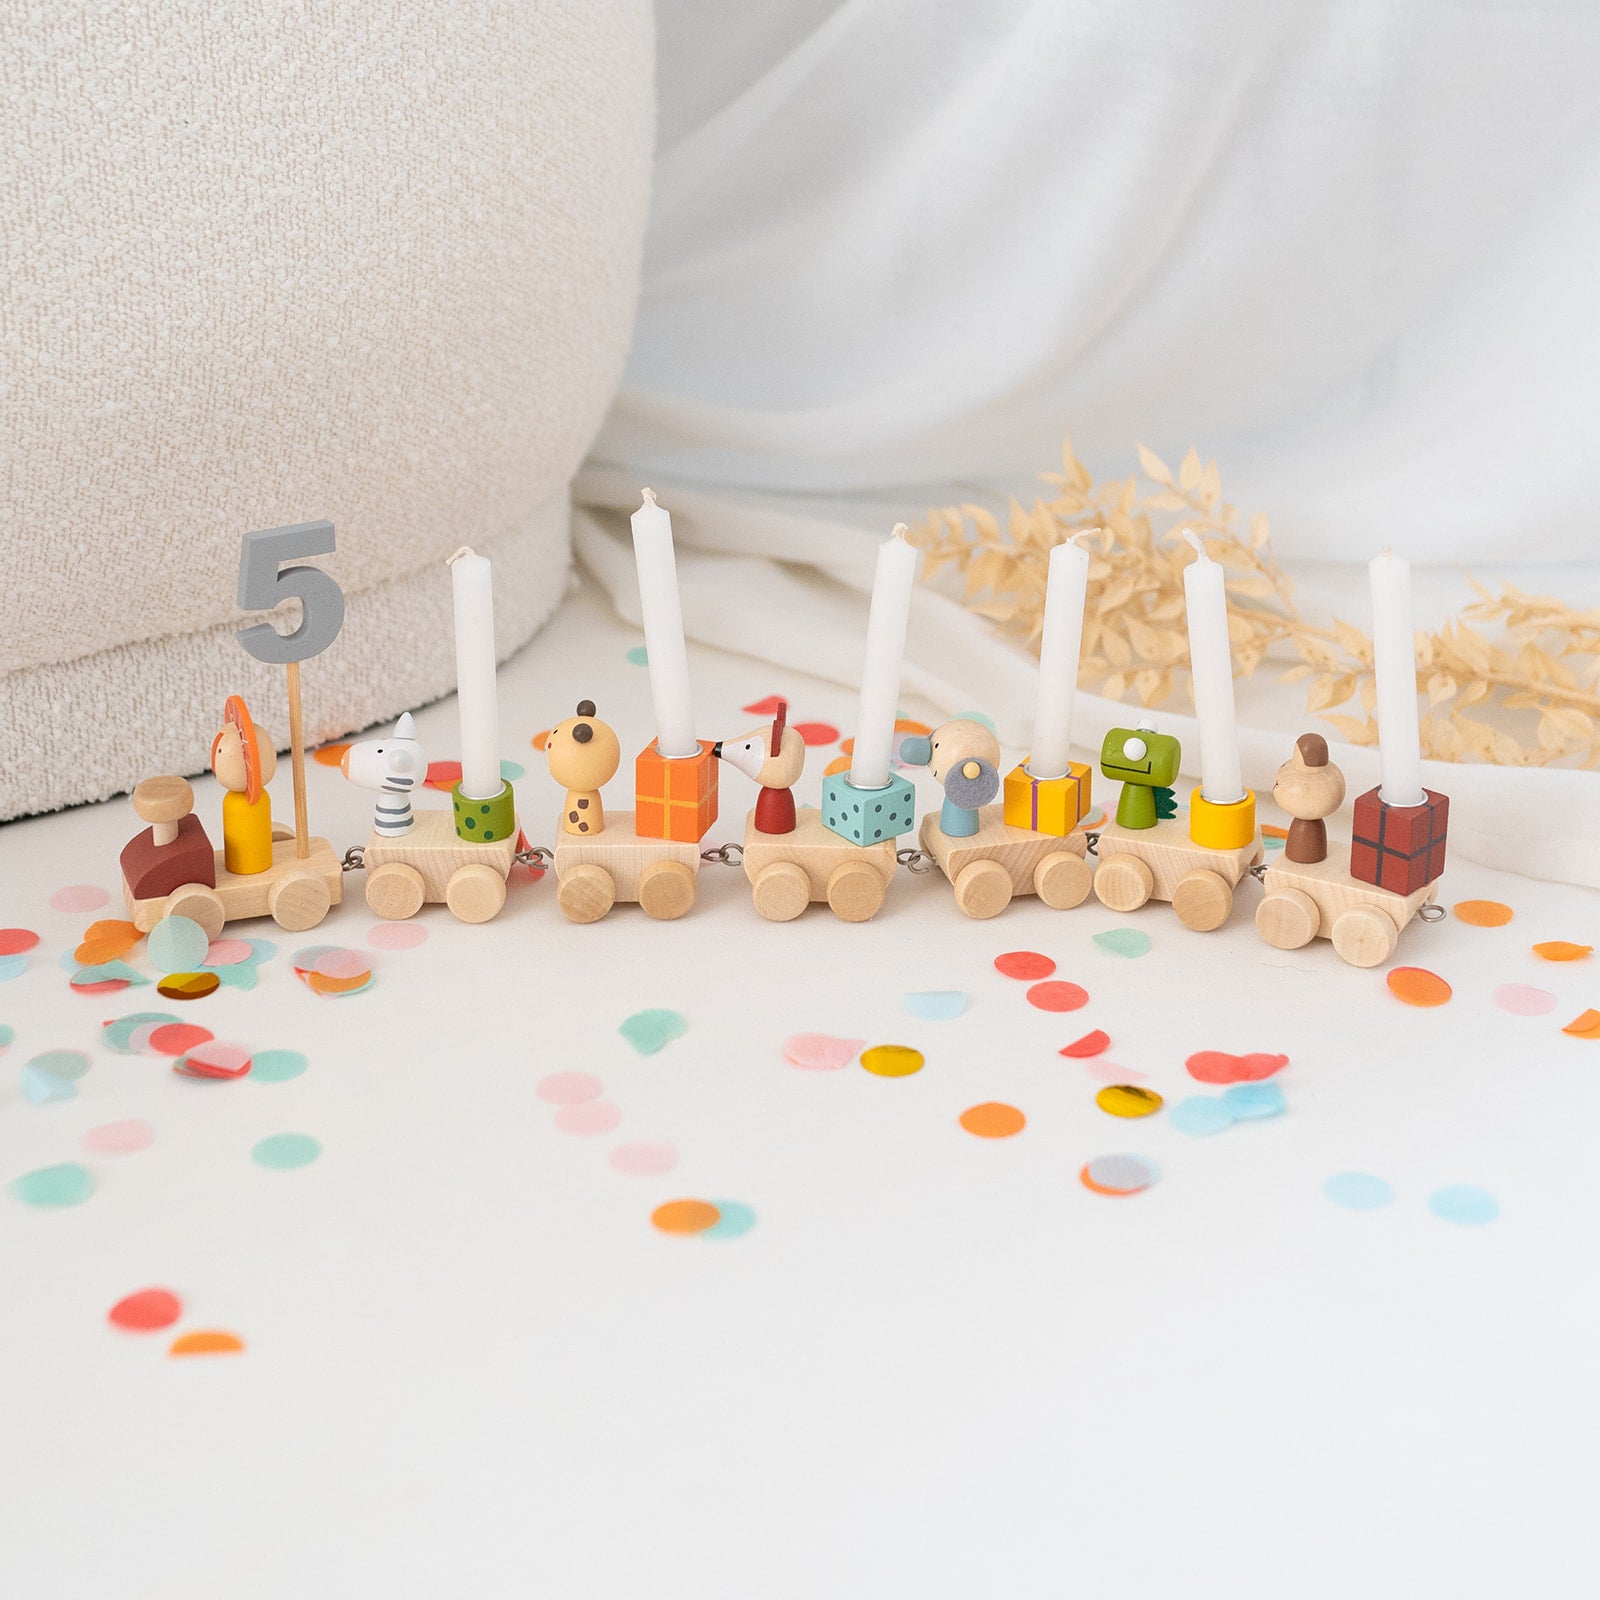 Geburtstagszug mit bunten Tieren, Zahlen und Kerzen